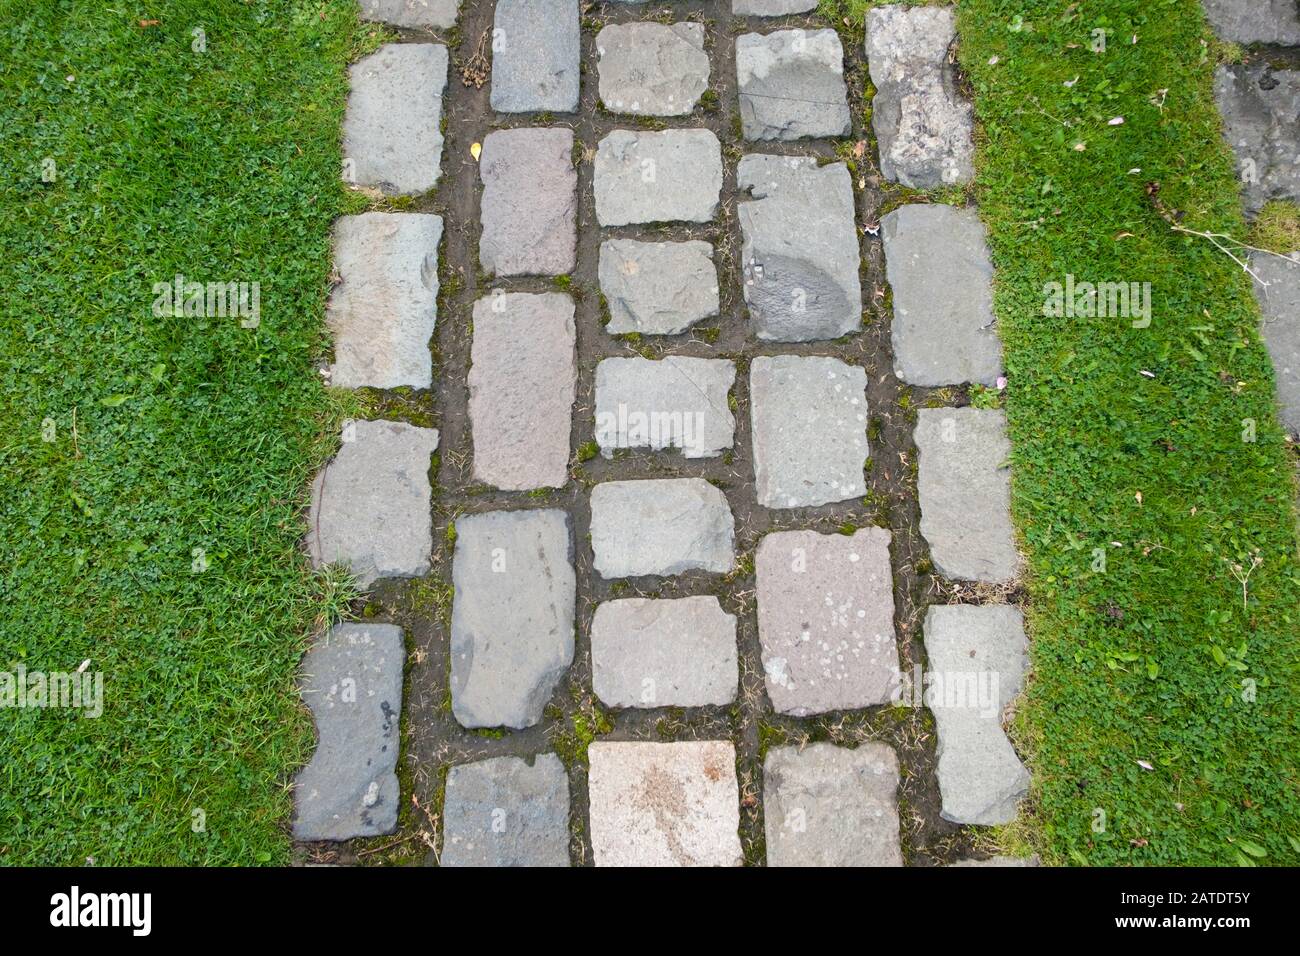 Primer plano de pequeñas losas de pavimentación de ladrillo en un patrón de rejilla para hacer un camino de jardín en un césped, en Escocia, Reino Unido Foto de stock